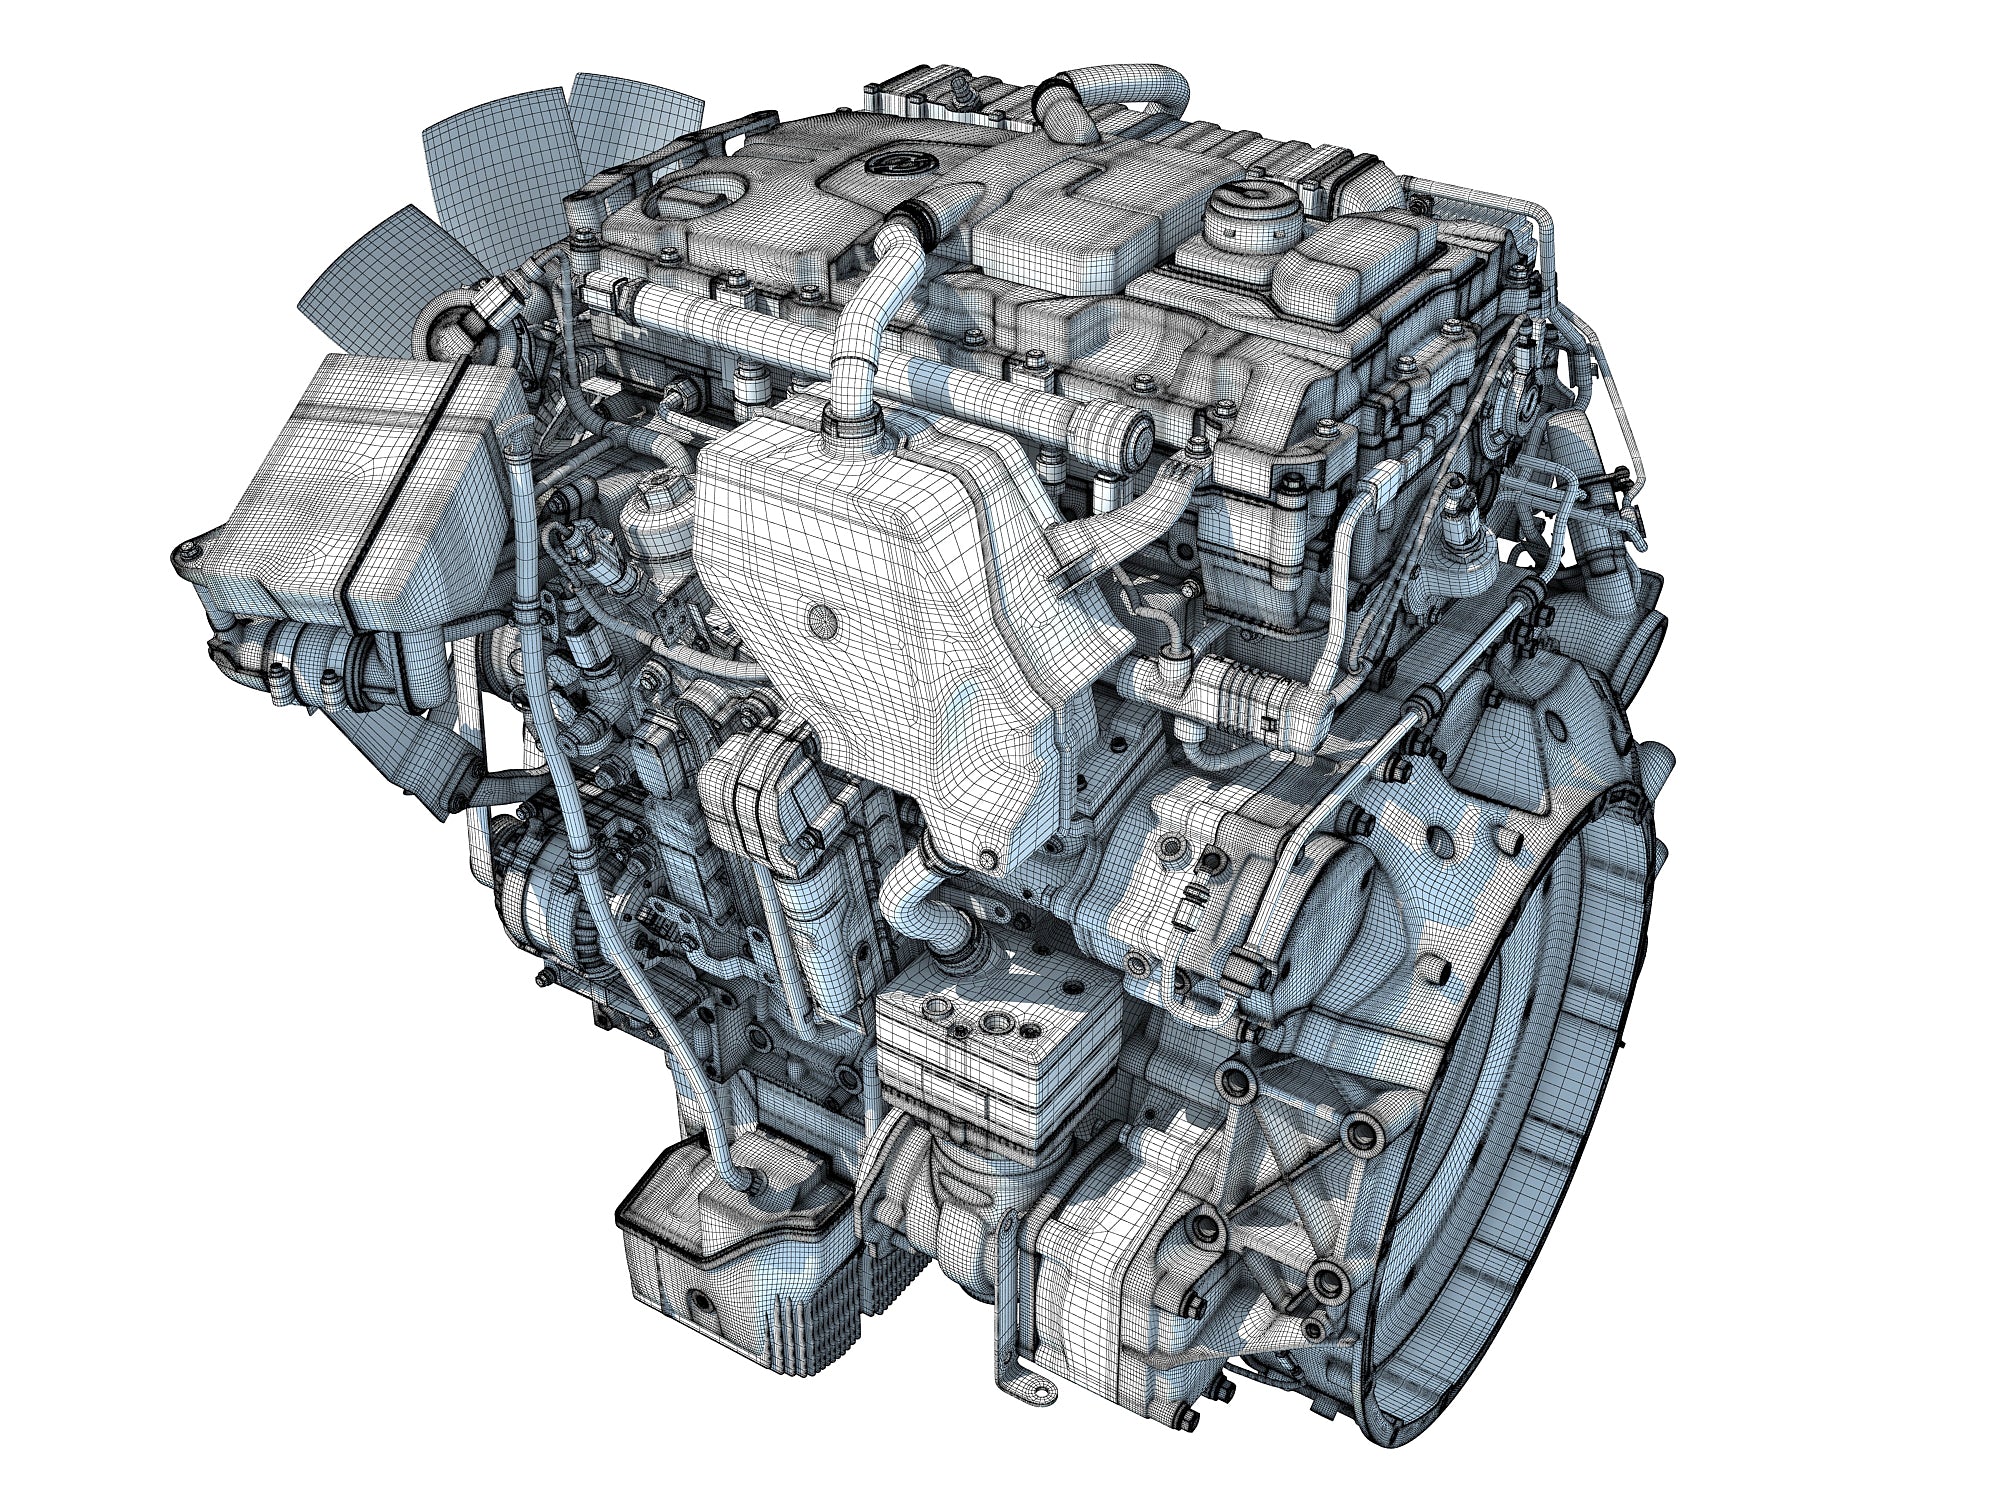 3D Engine models